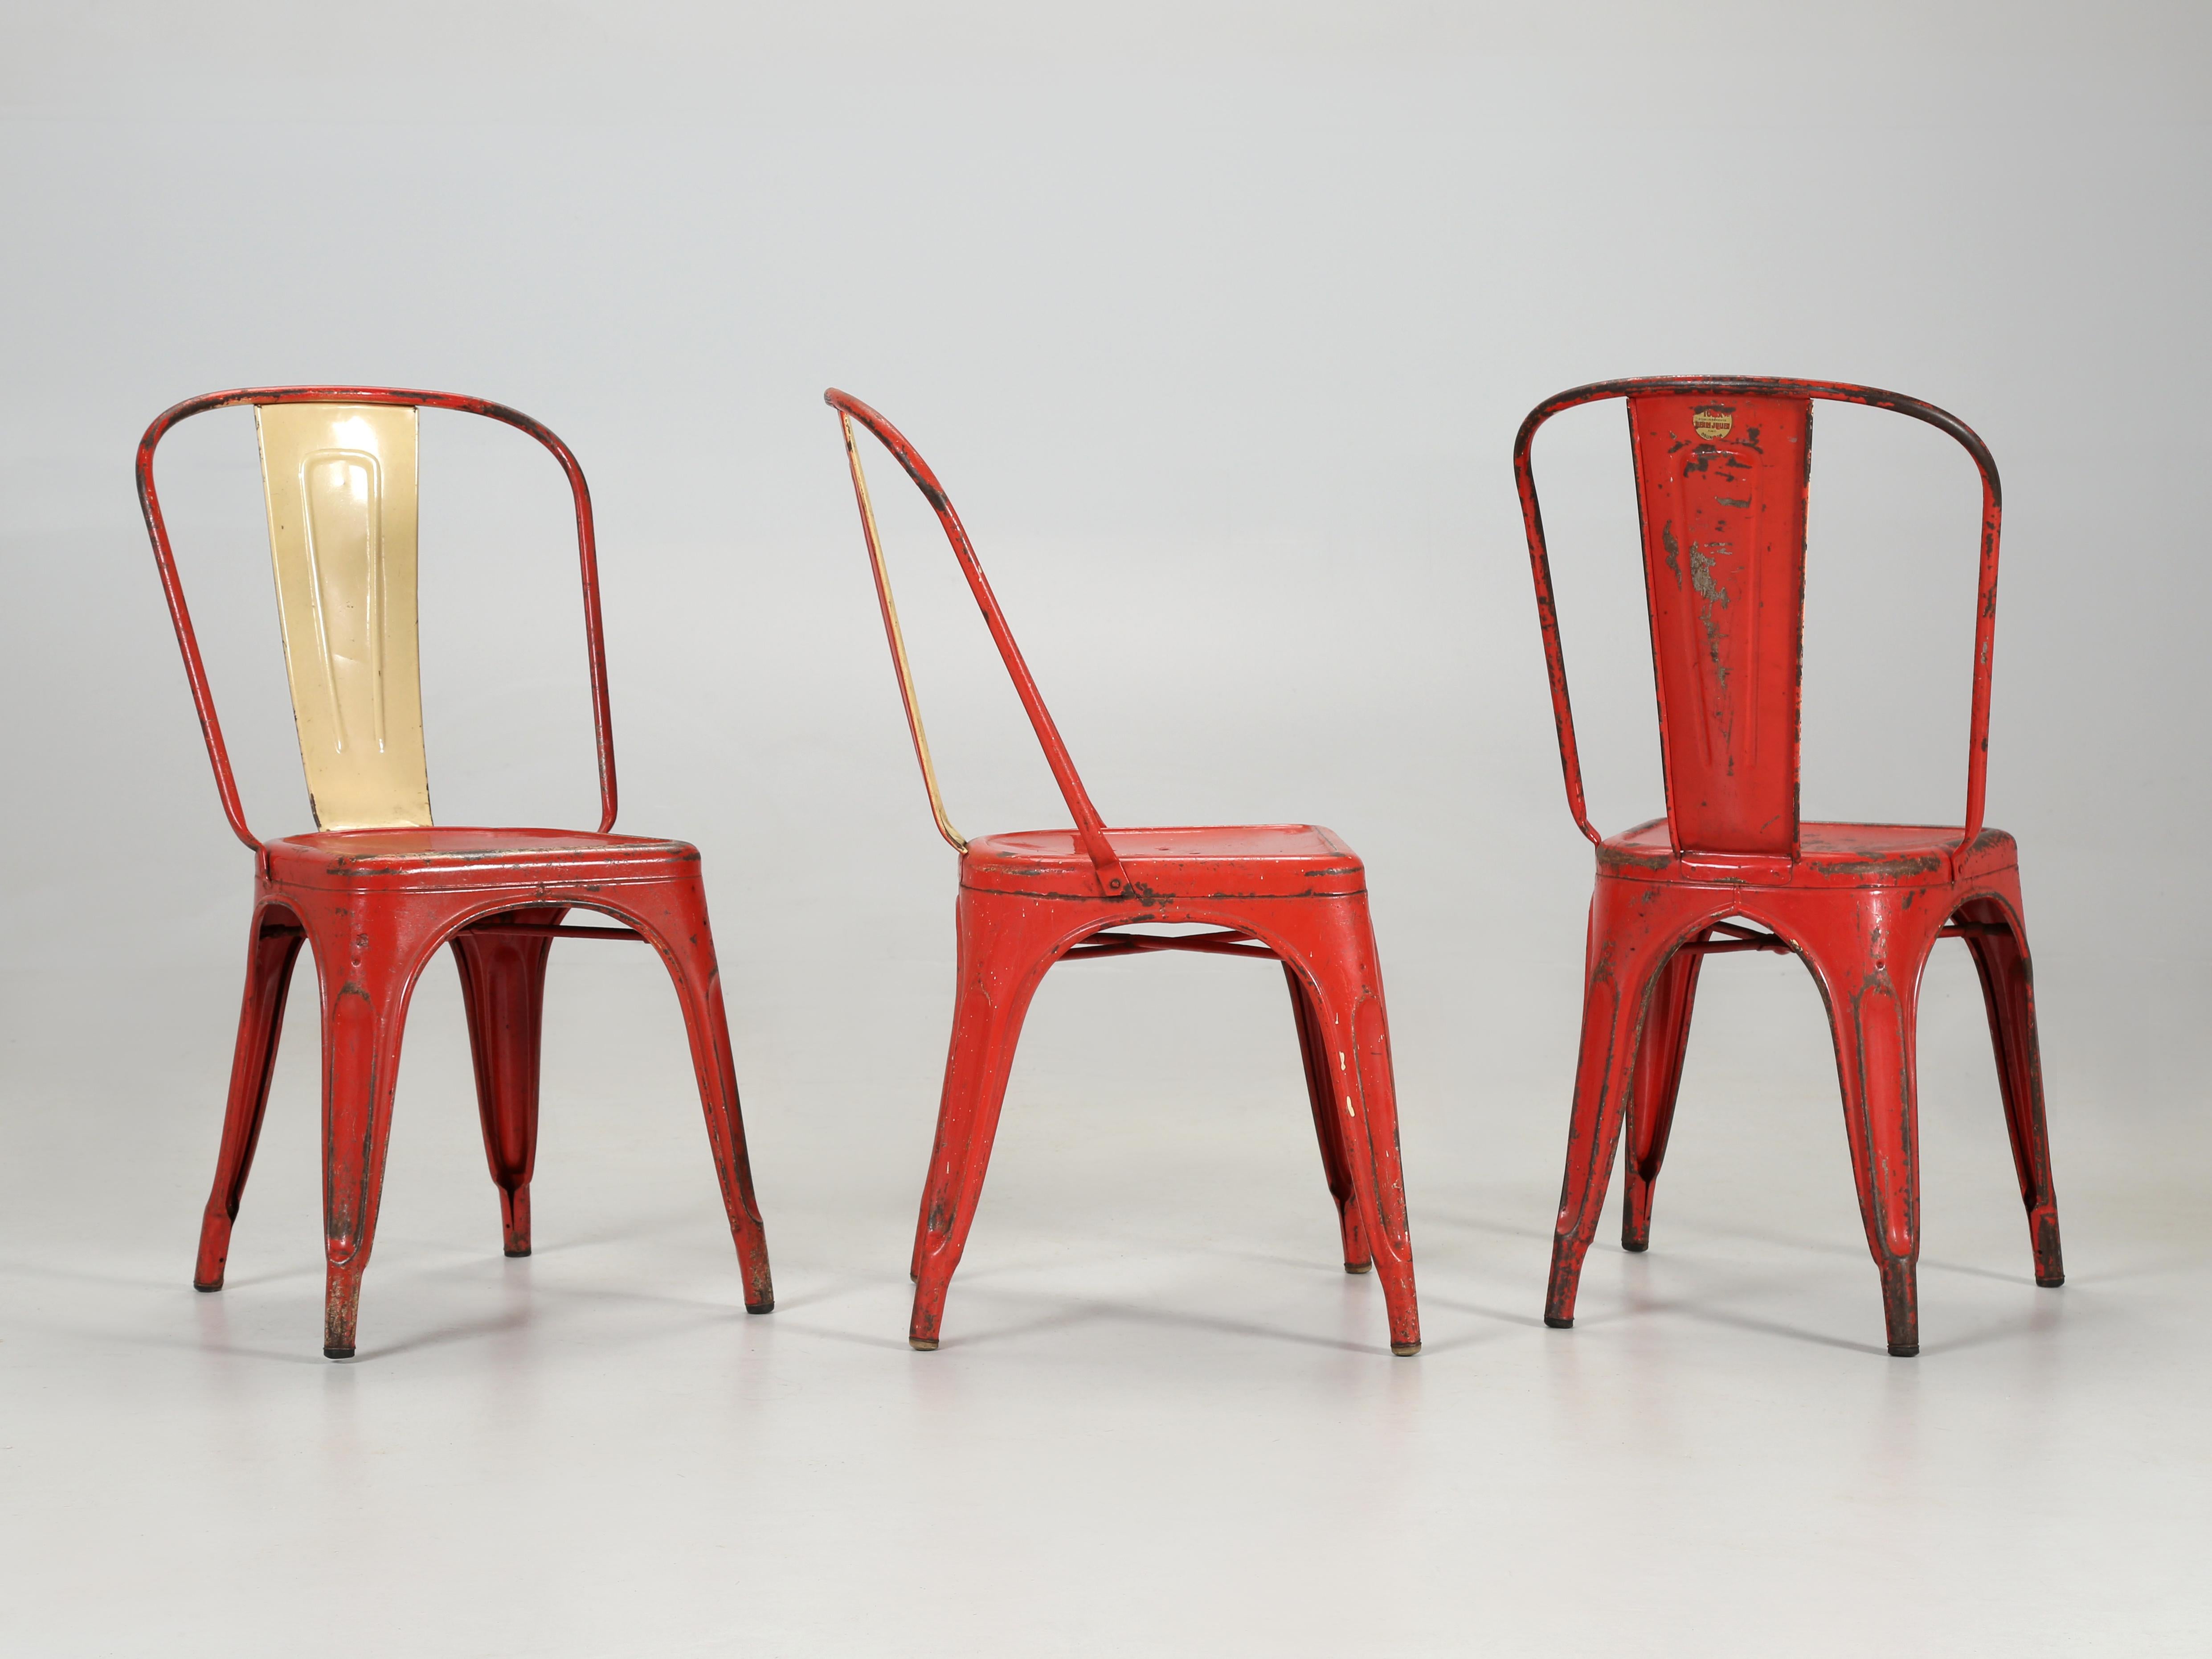 Authentische handgefertigte europäische Tolix-Stühle mit dem originalen goldenen TOLIX-Label. Während einige Händler behaupten, ein paar Sets auf Lager zu haben, haben wir nicht Dutzende oder Hunderte, sondern über tausend Tolix-Stühle, -Hocker und